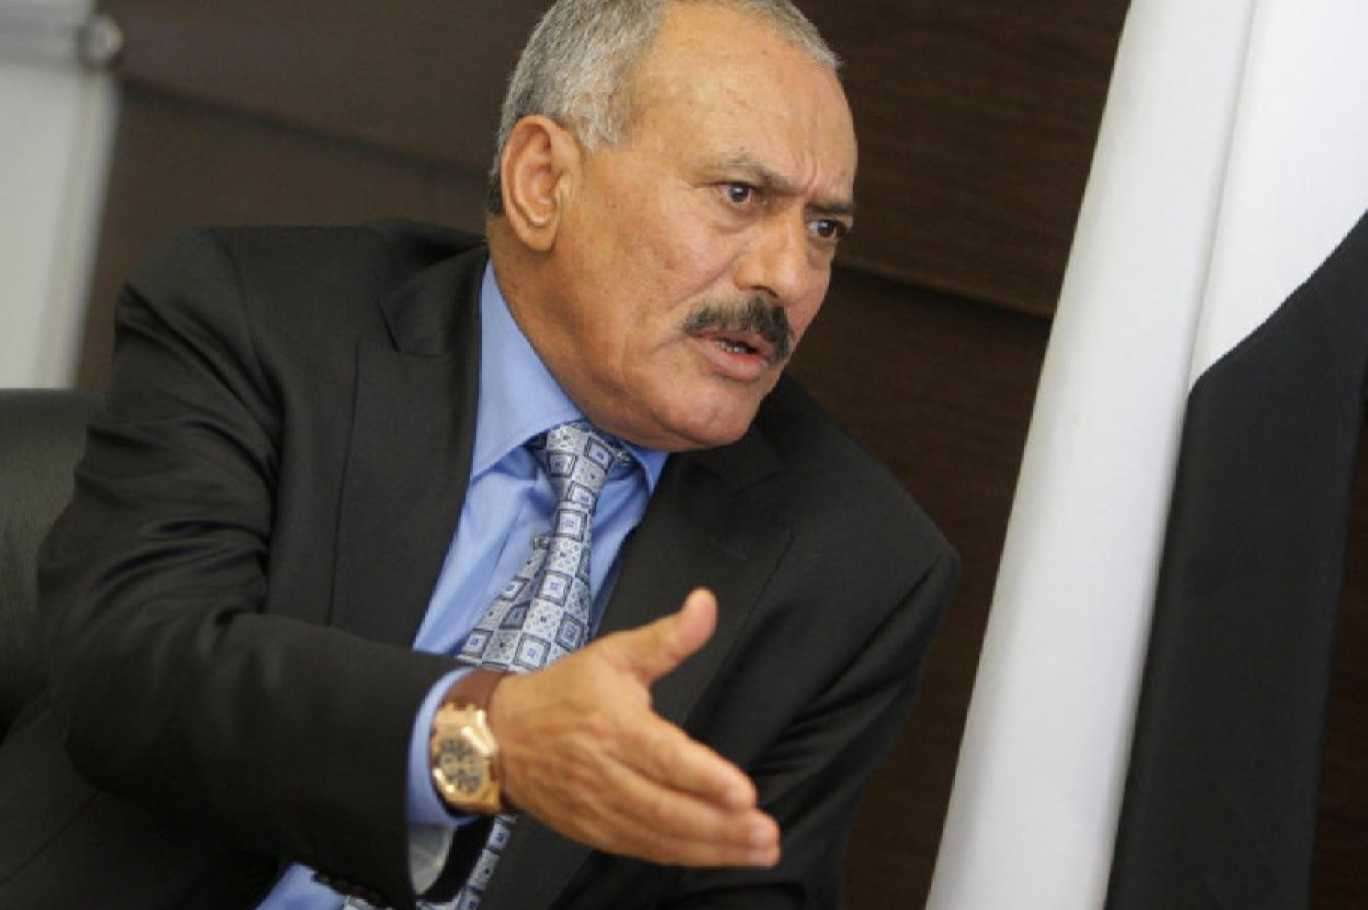 شاهد بالصور .. ظهور الرئيس علي عبدالله صالح بتعز والجميع يقوم بالتقاط الصور معه